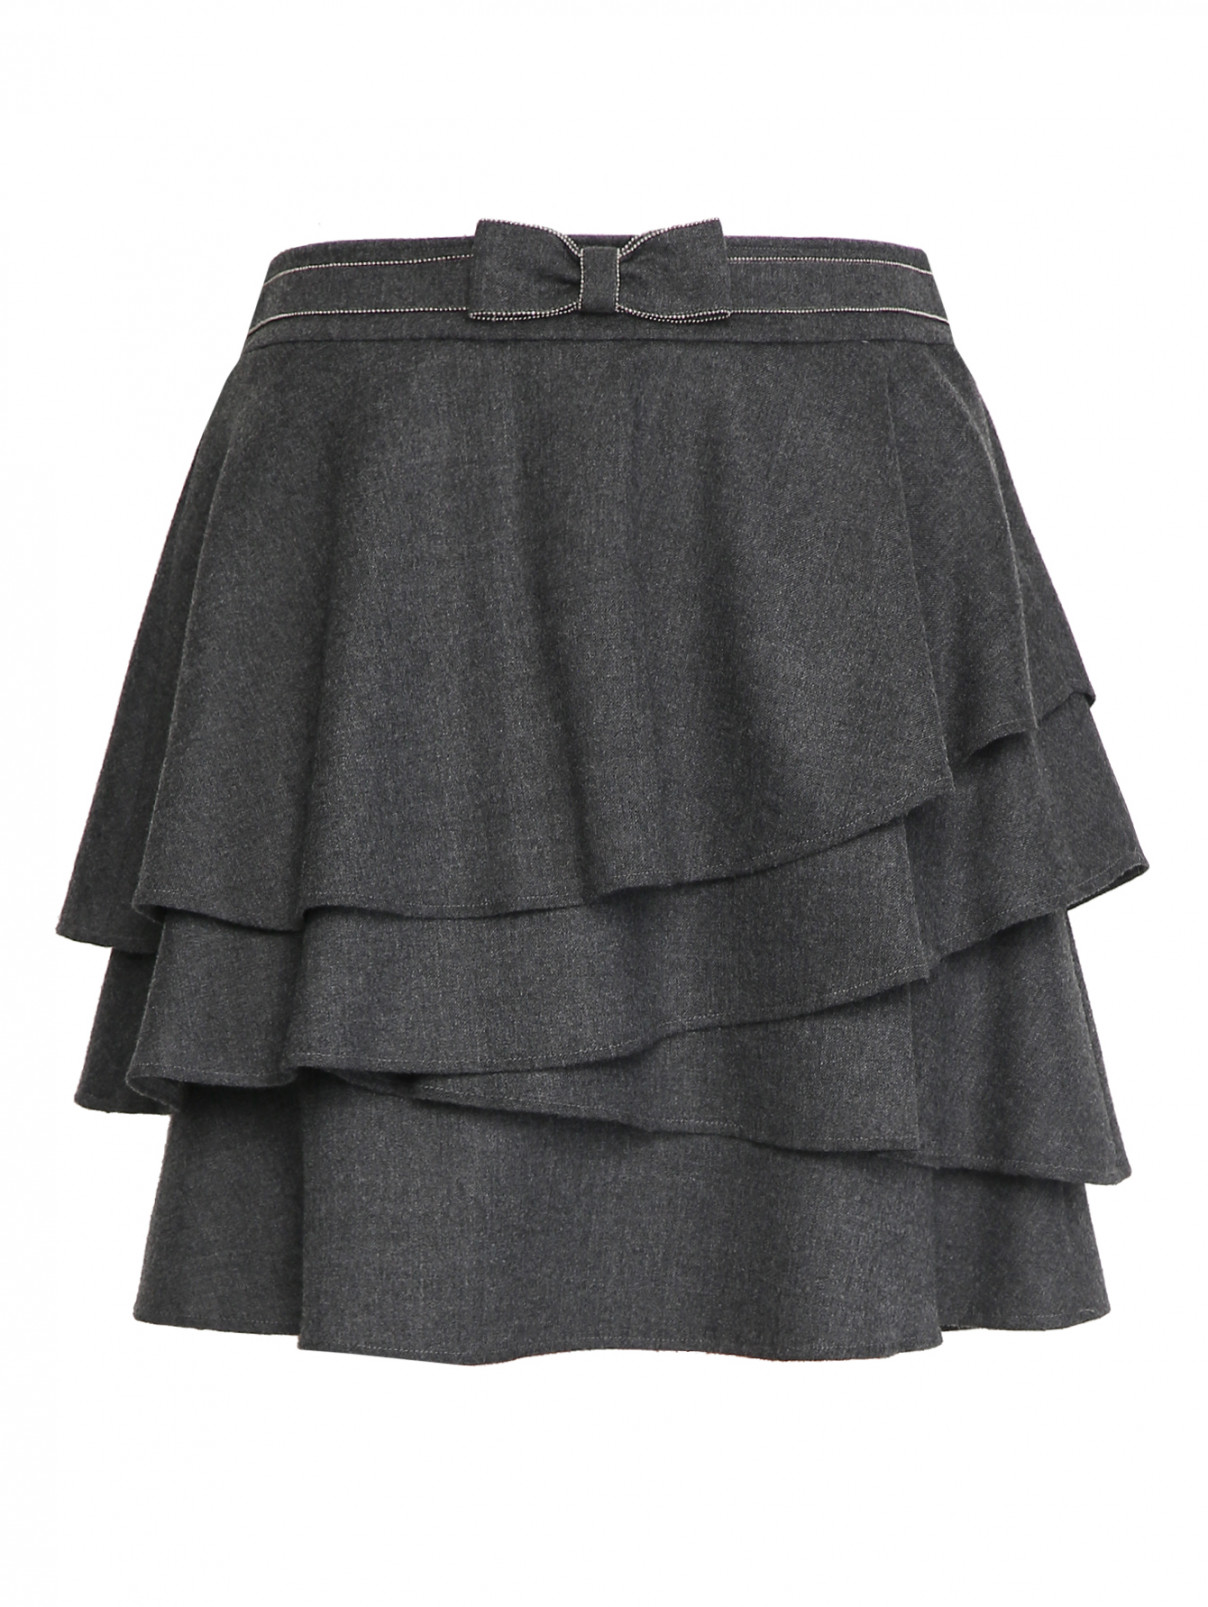 Юбка из шерсти с воланами Aletta Couture  –  Общий вид  – Цвет:  Серый